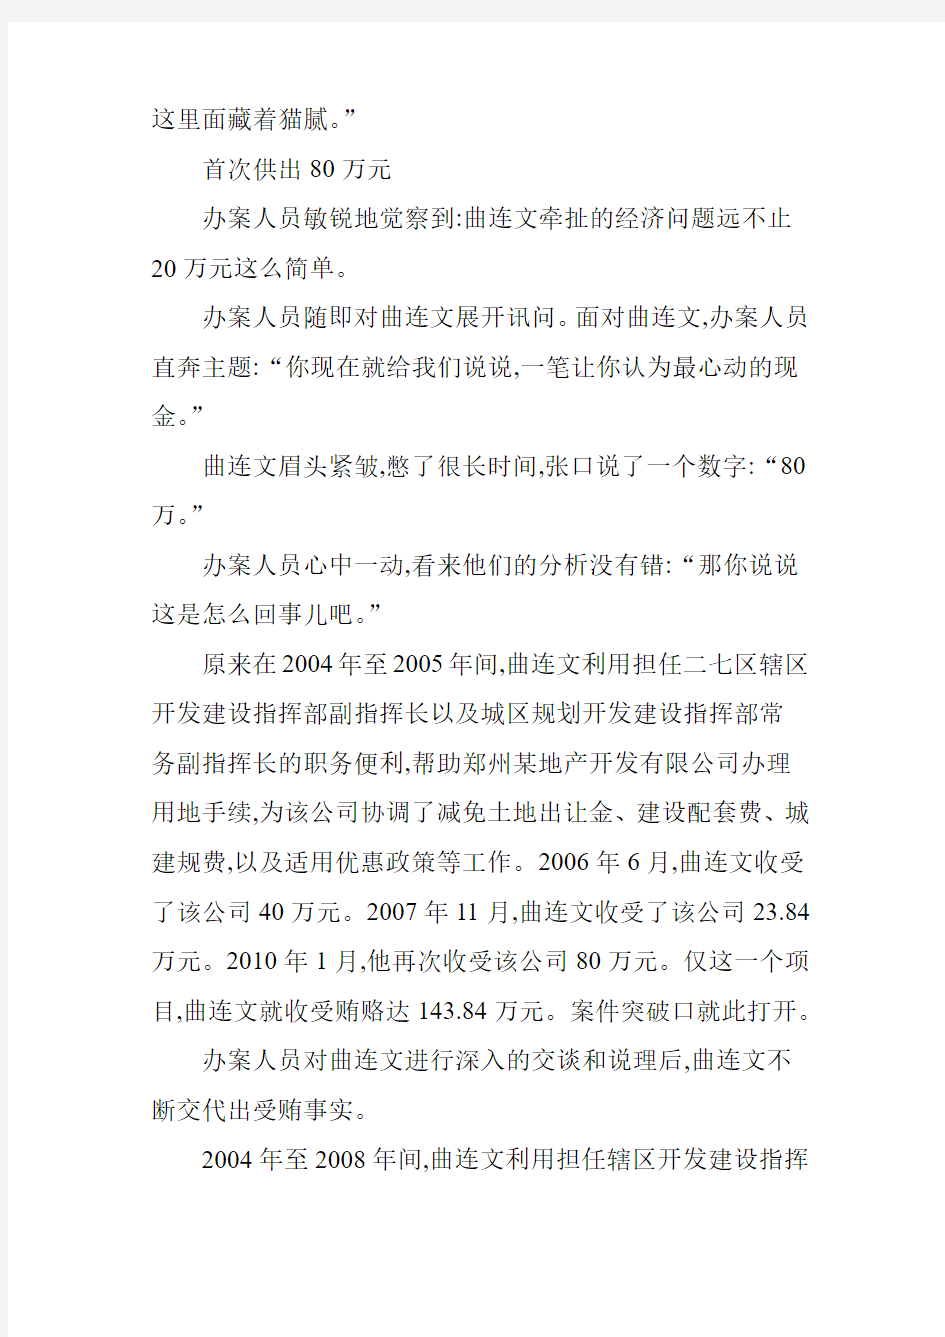 郑州二七区委原常委受贿近千万 购物卡铺满床 图